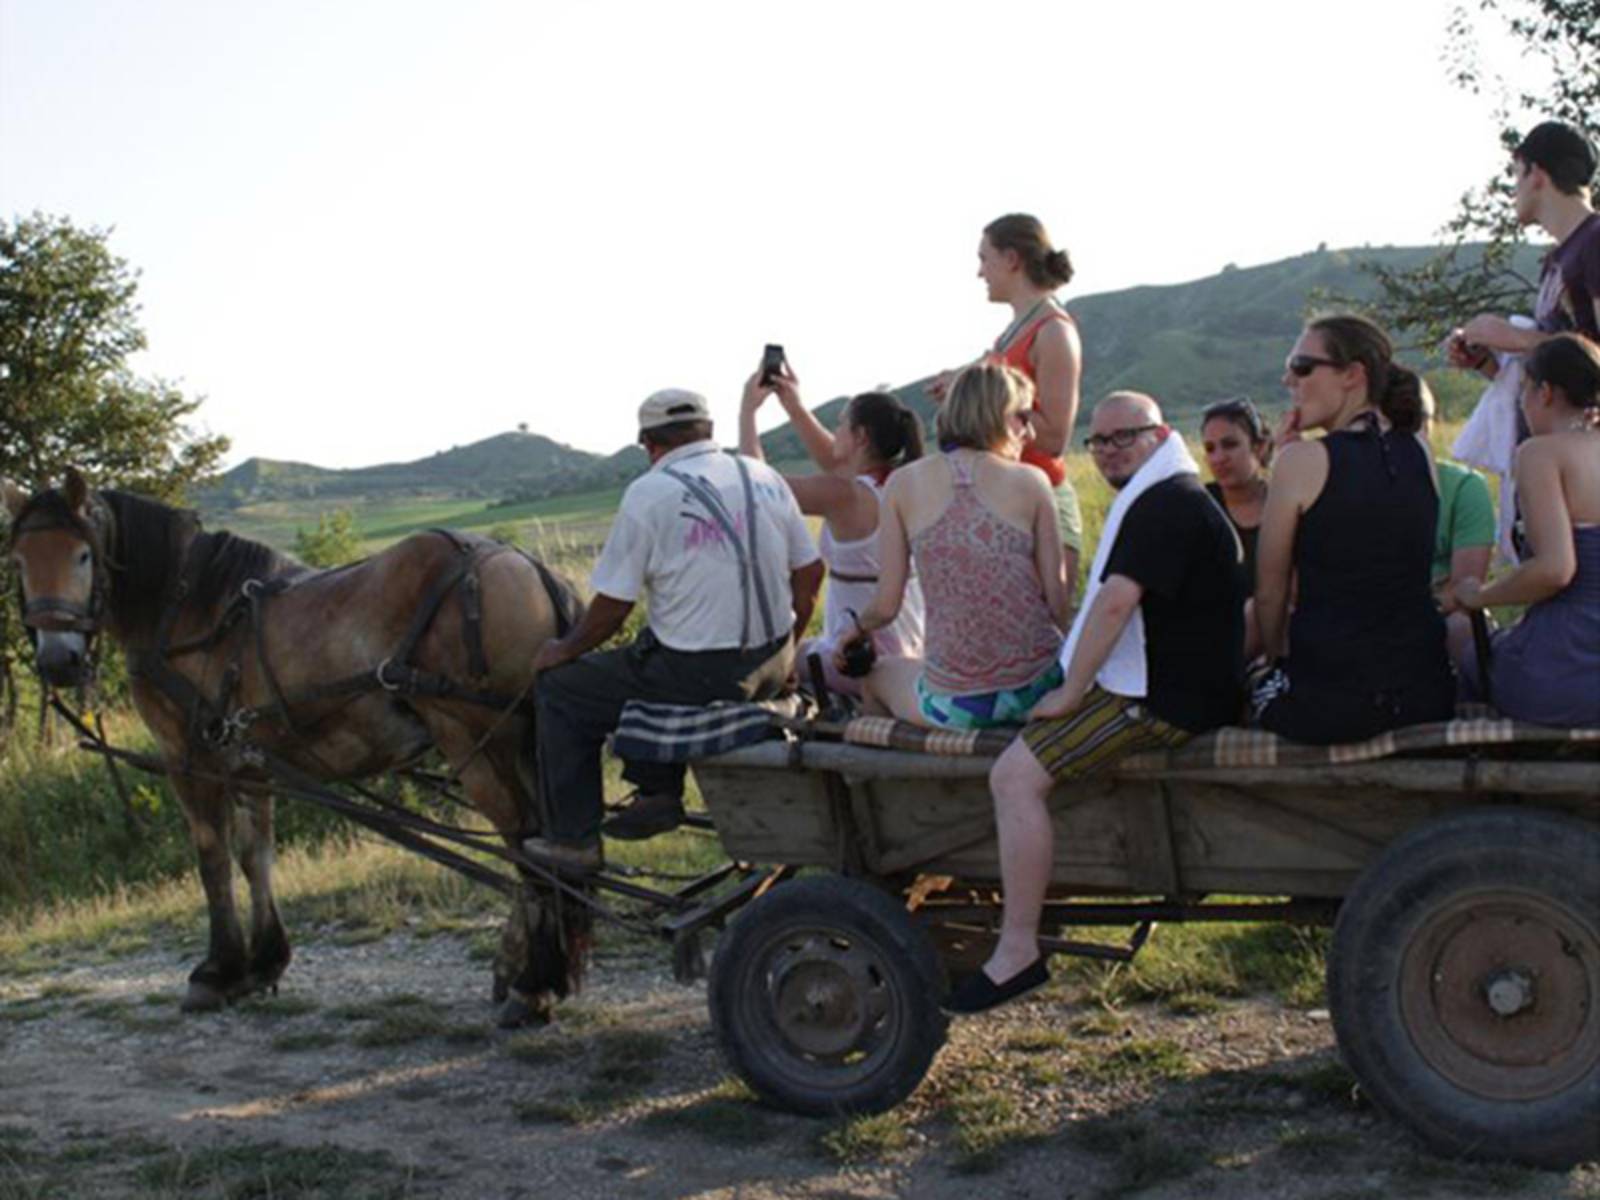 Jugendliche und Kutscher auf einem Holzwagen, der von einem Pferd durch ländliches Gebiet gezogen wird.